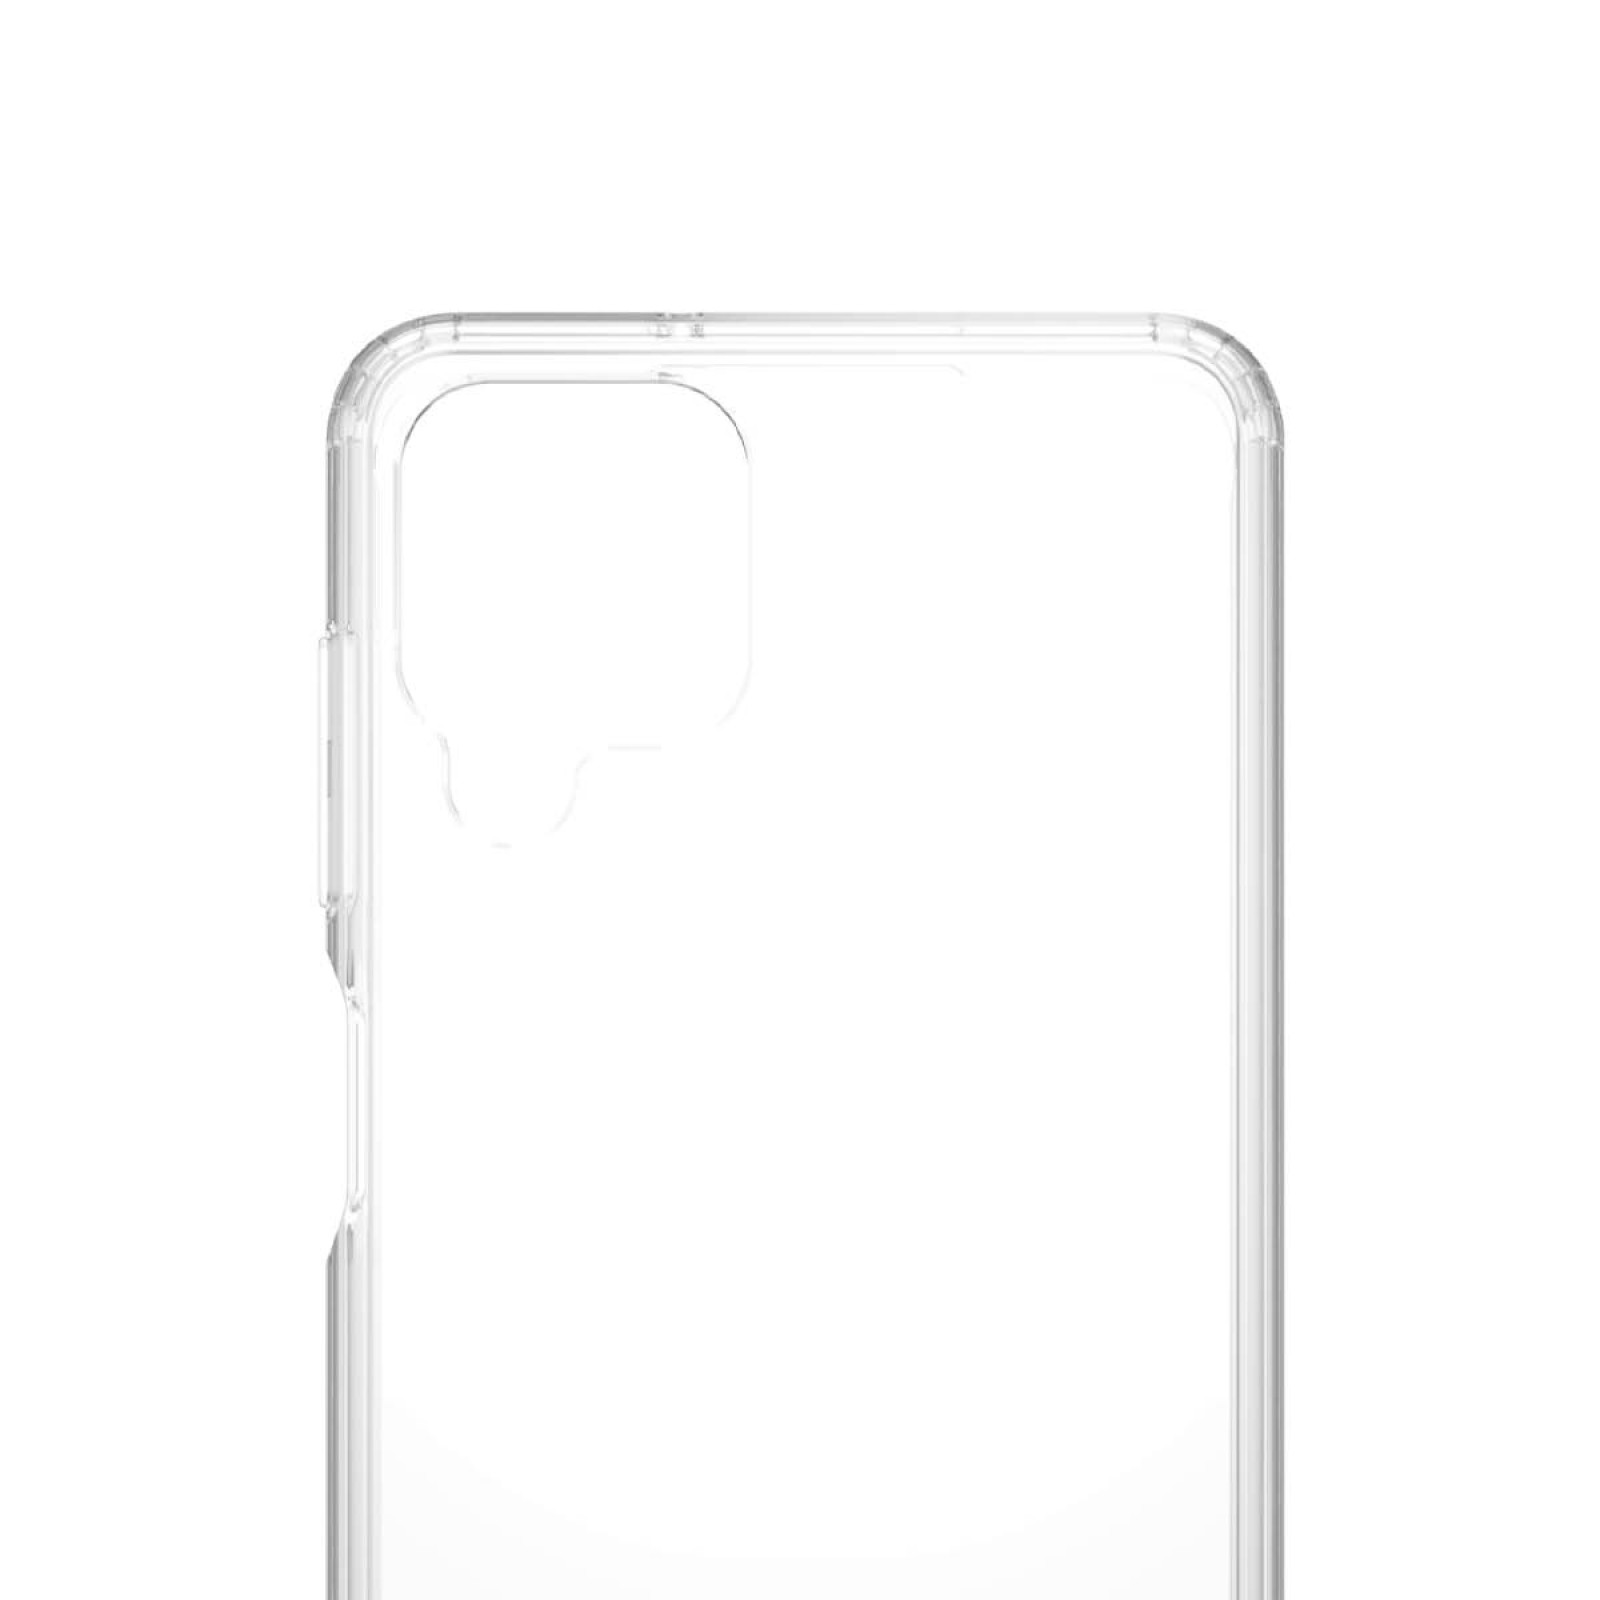 Гръб PanzerGlass Hard Case за Samsung Galaxy A12 - Прозрачен